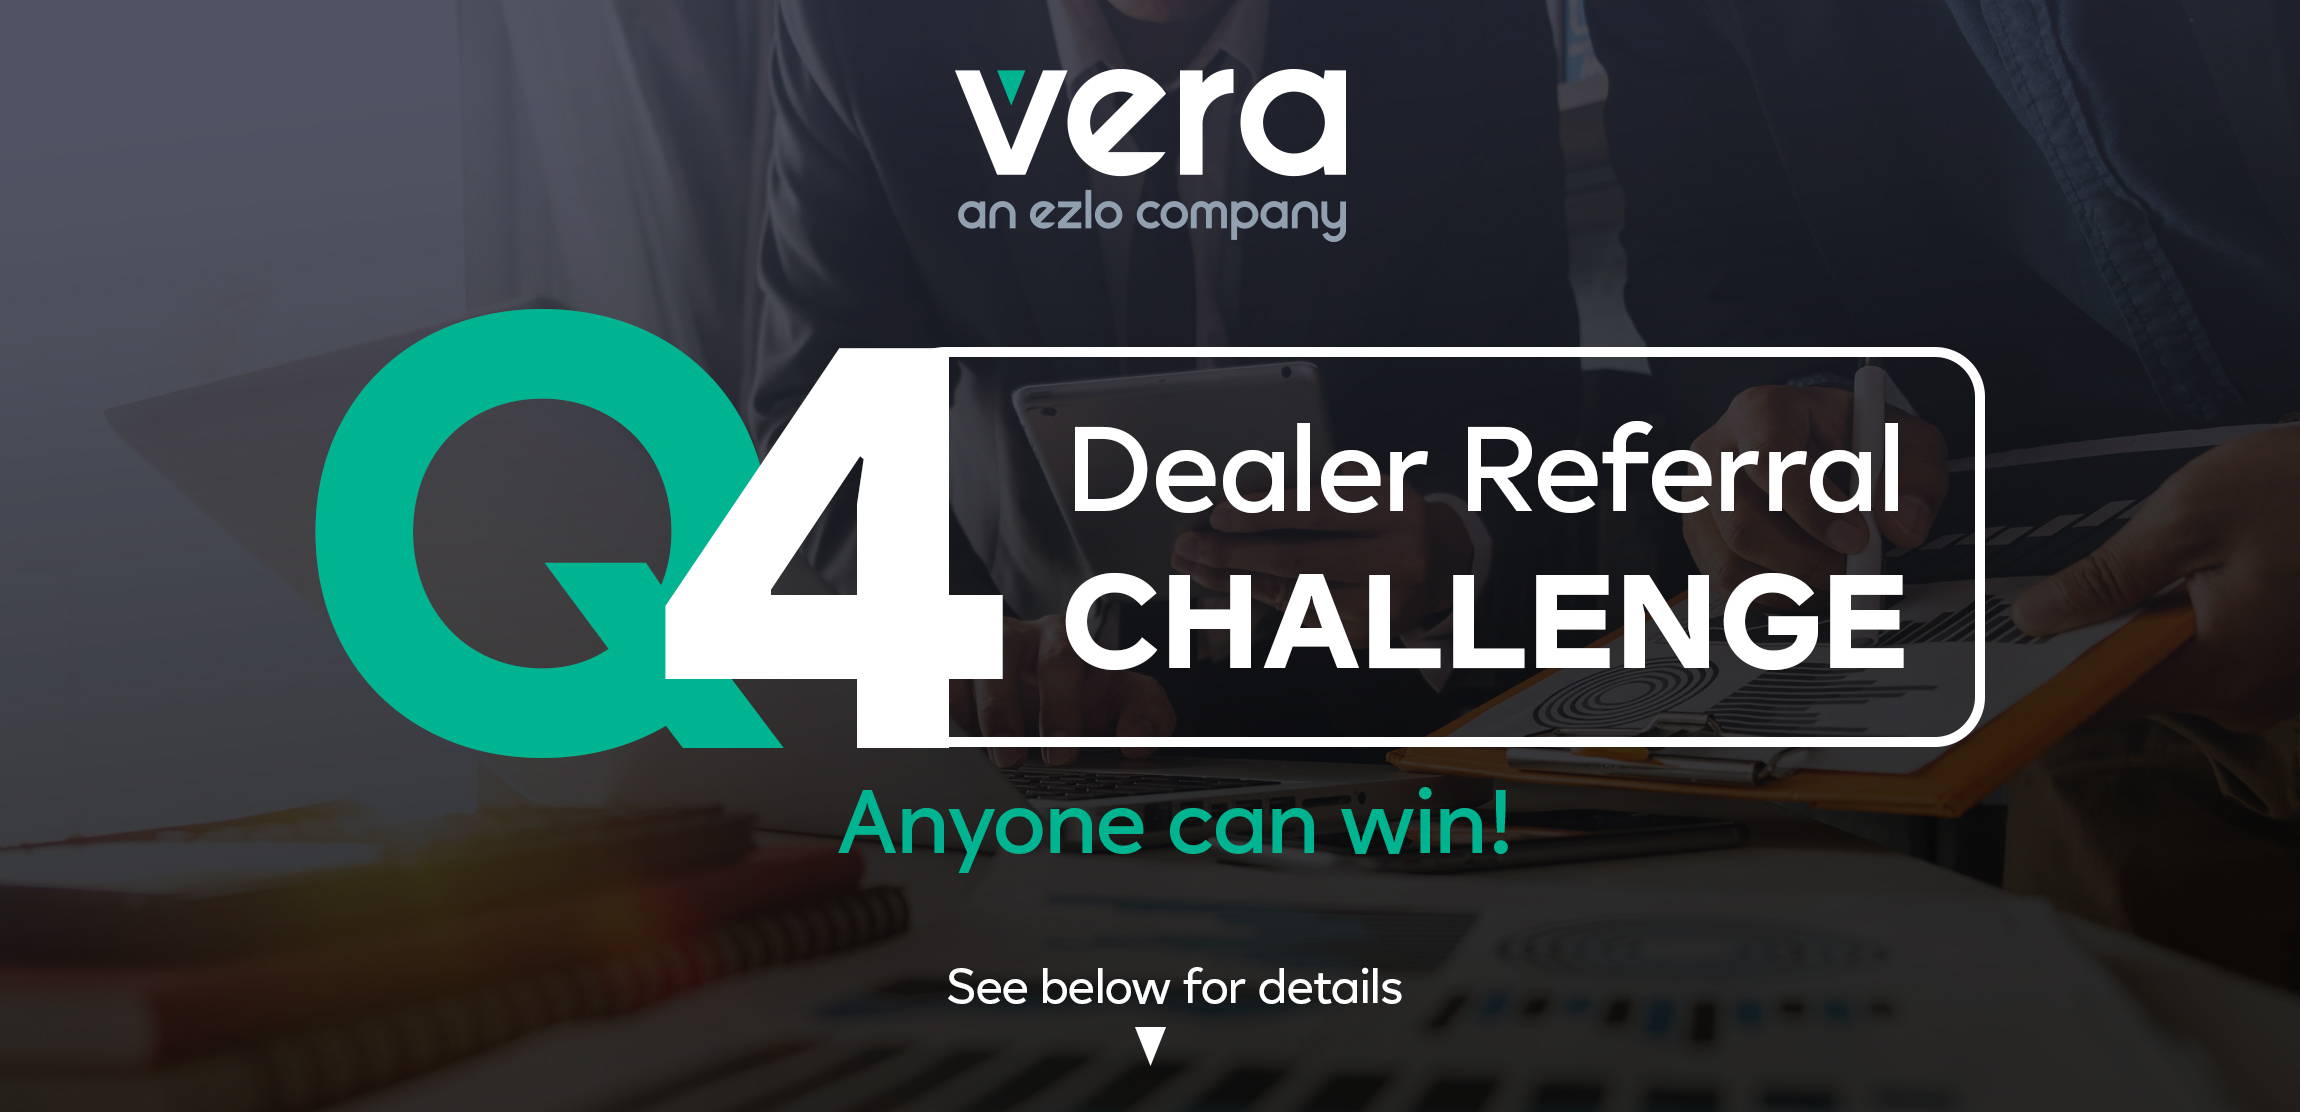 Q4 Dealer Referral Challenge Vera